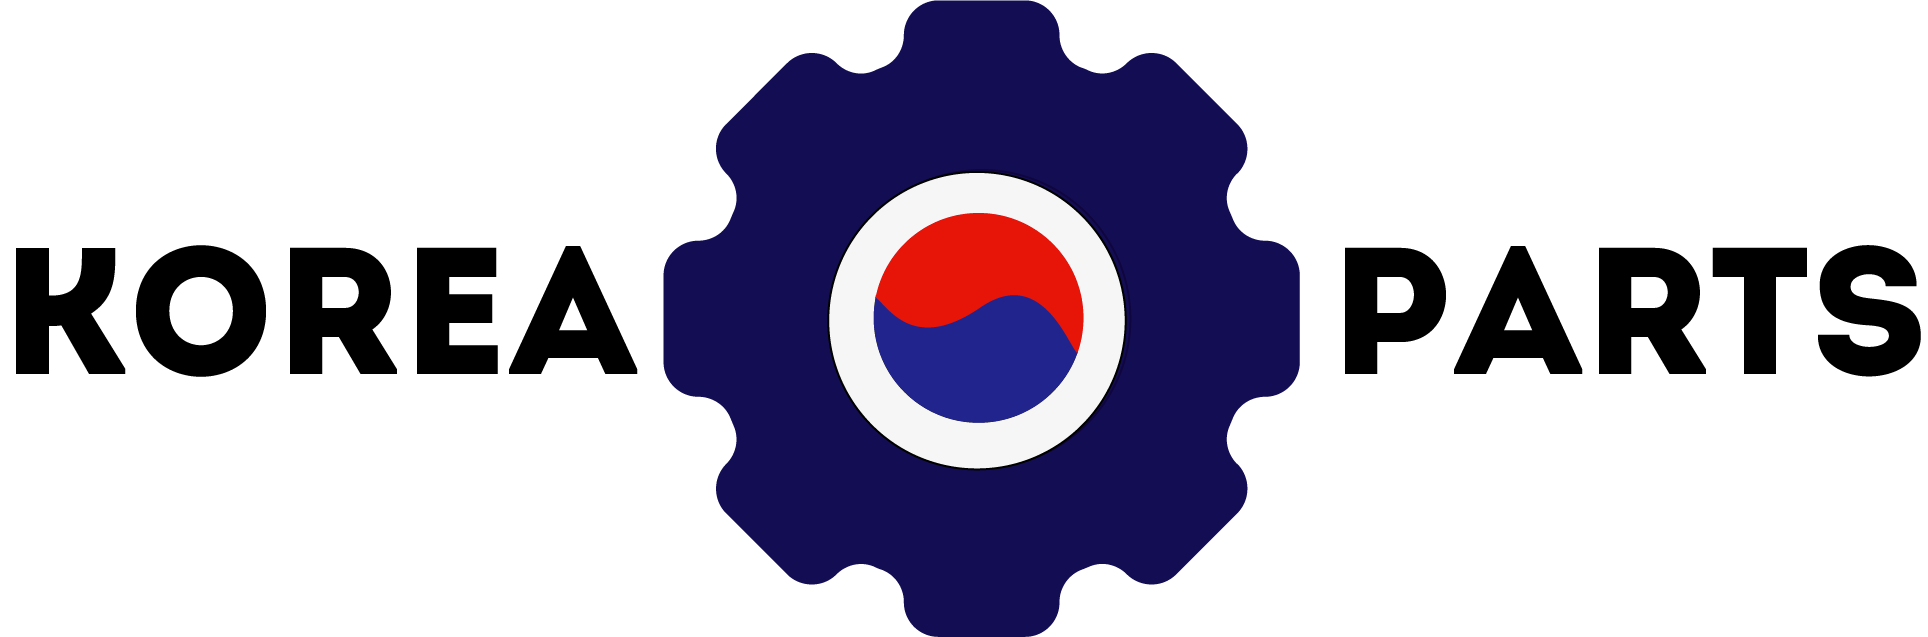 Korea Parts